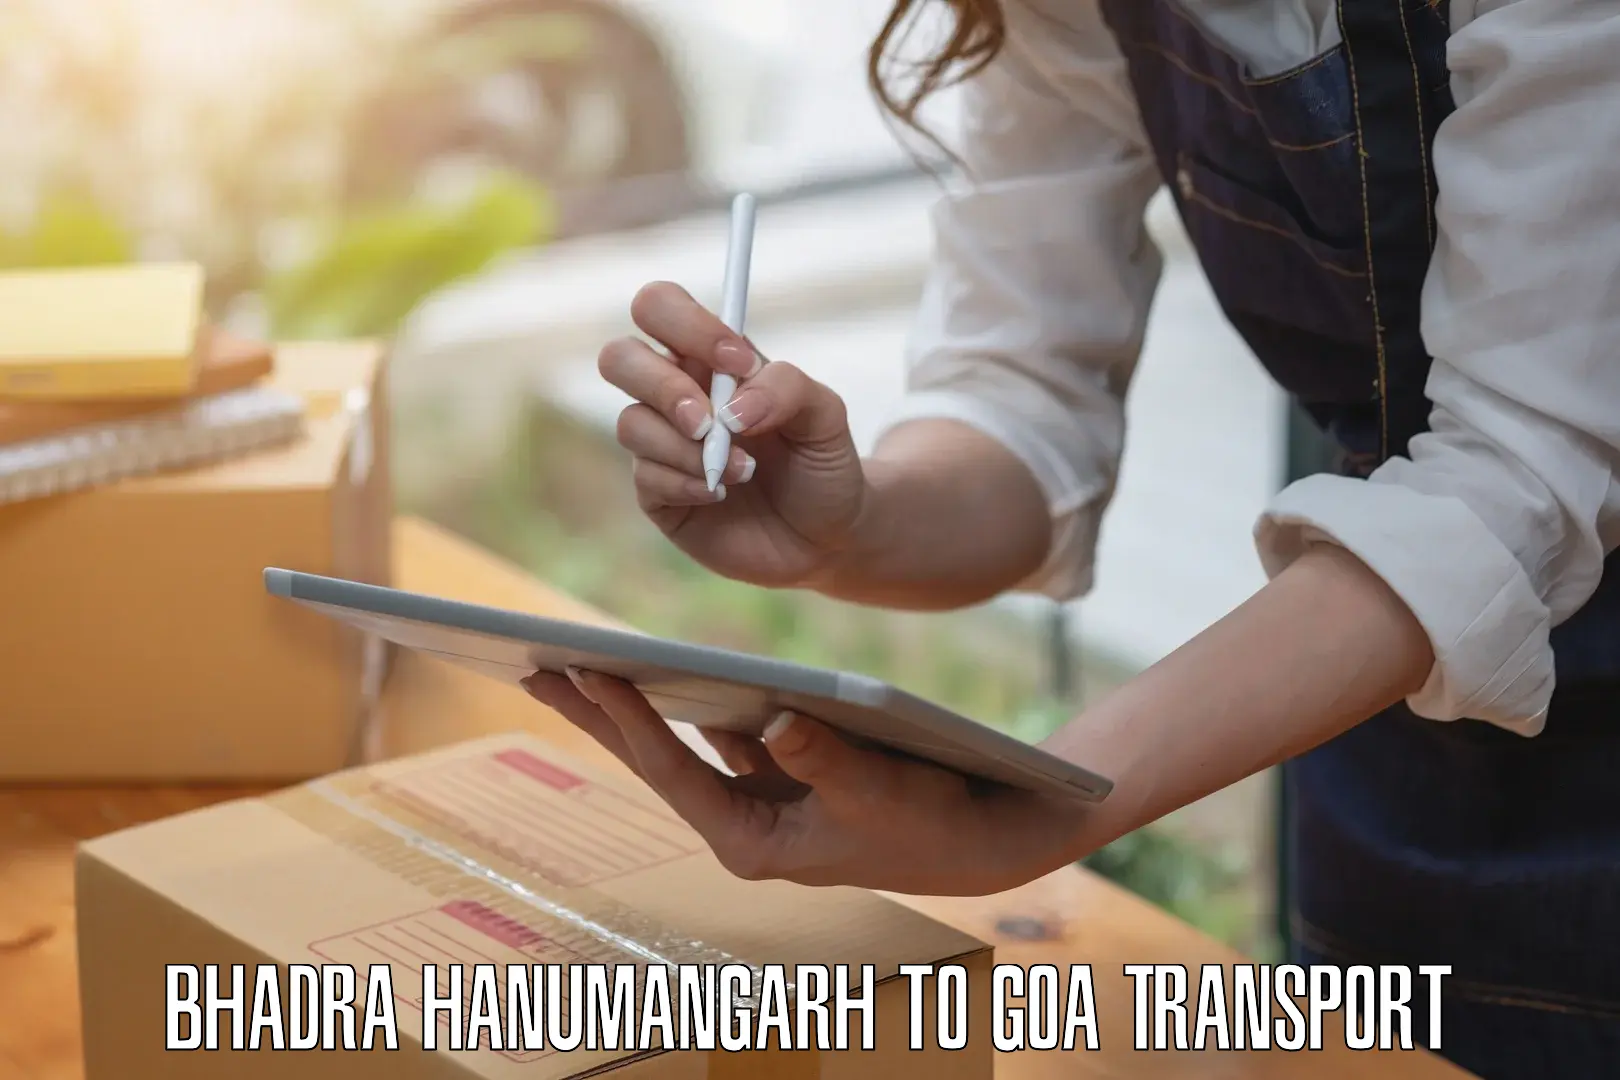 Truck transport companies in India Bhadra Hanumangarh to Panjim